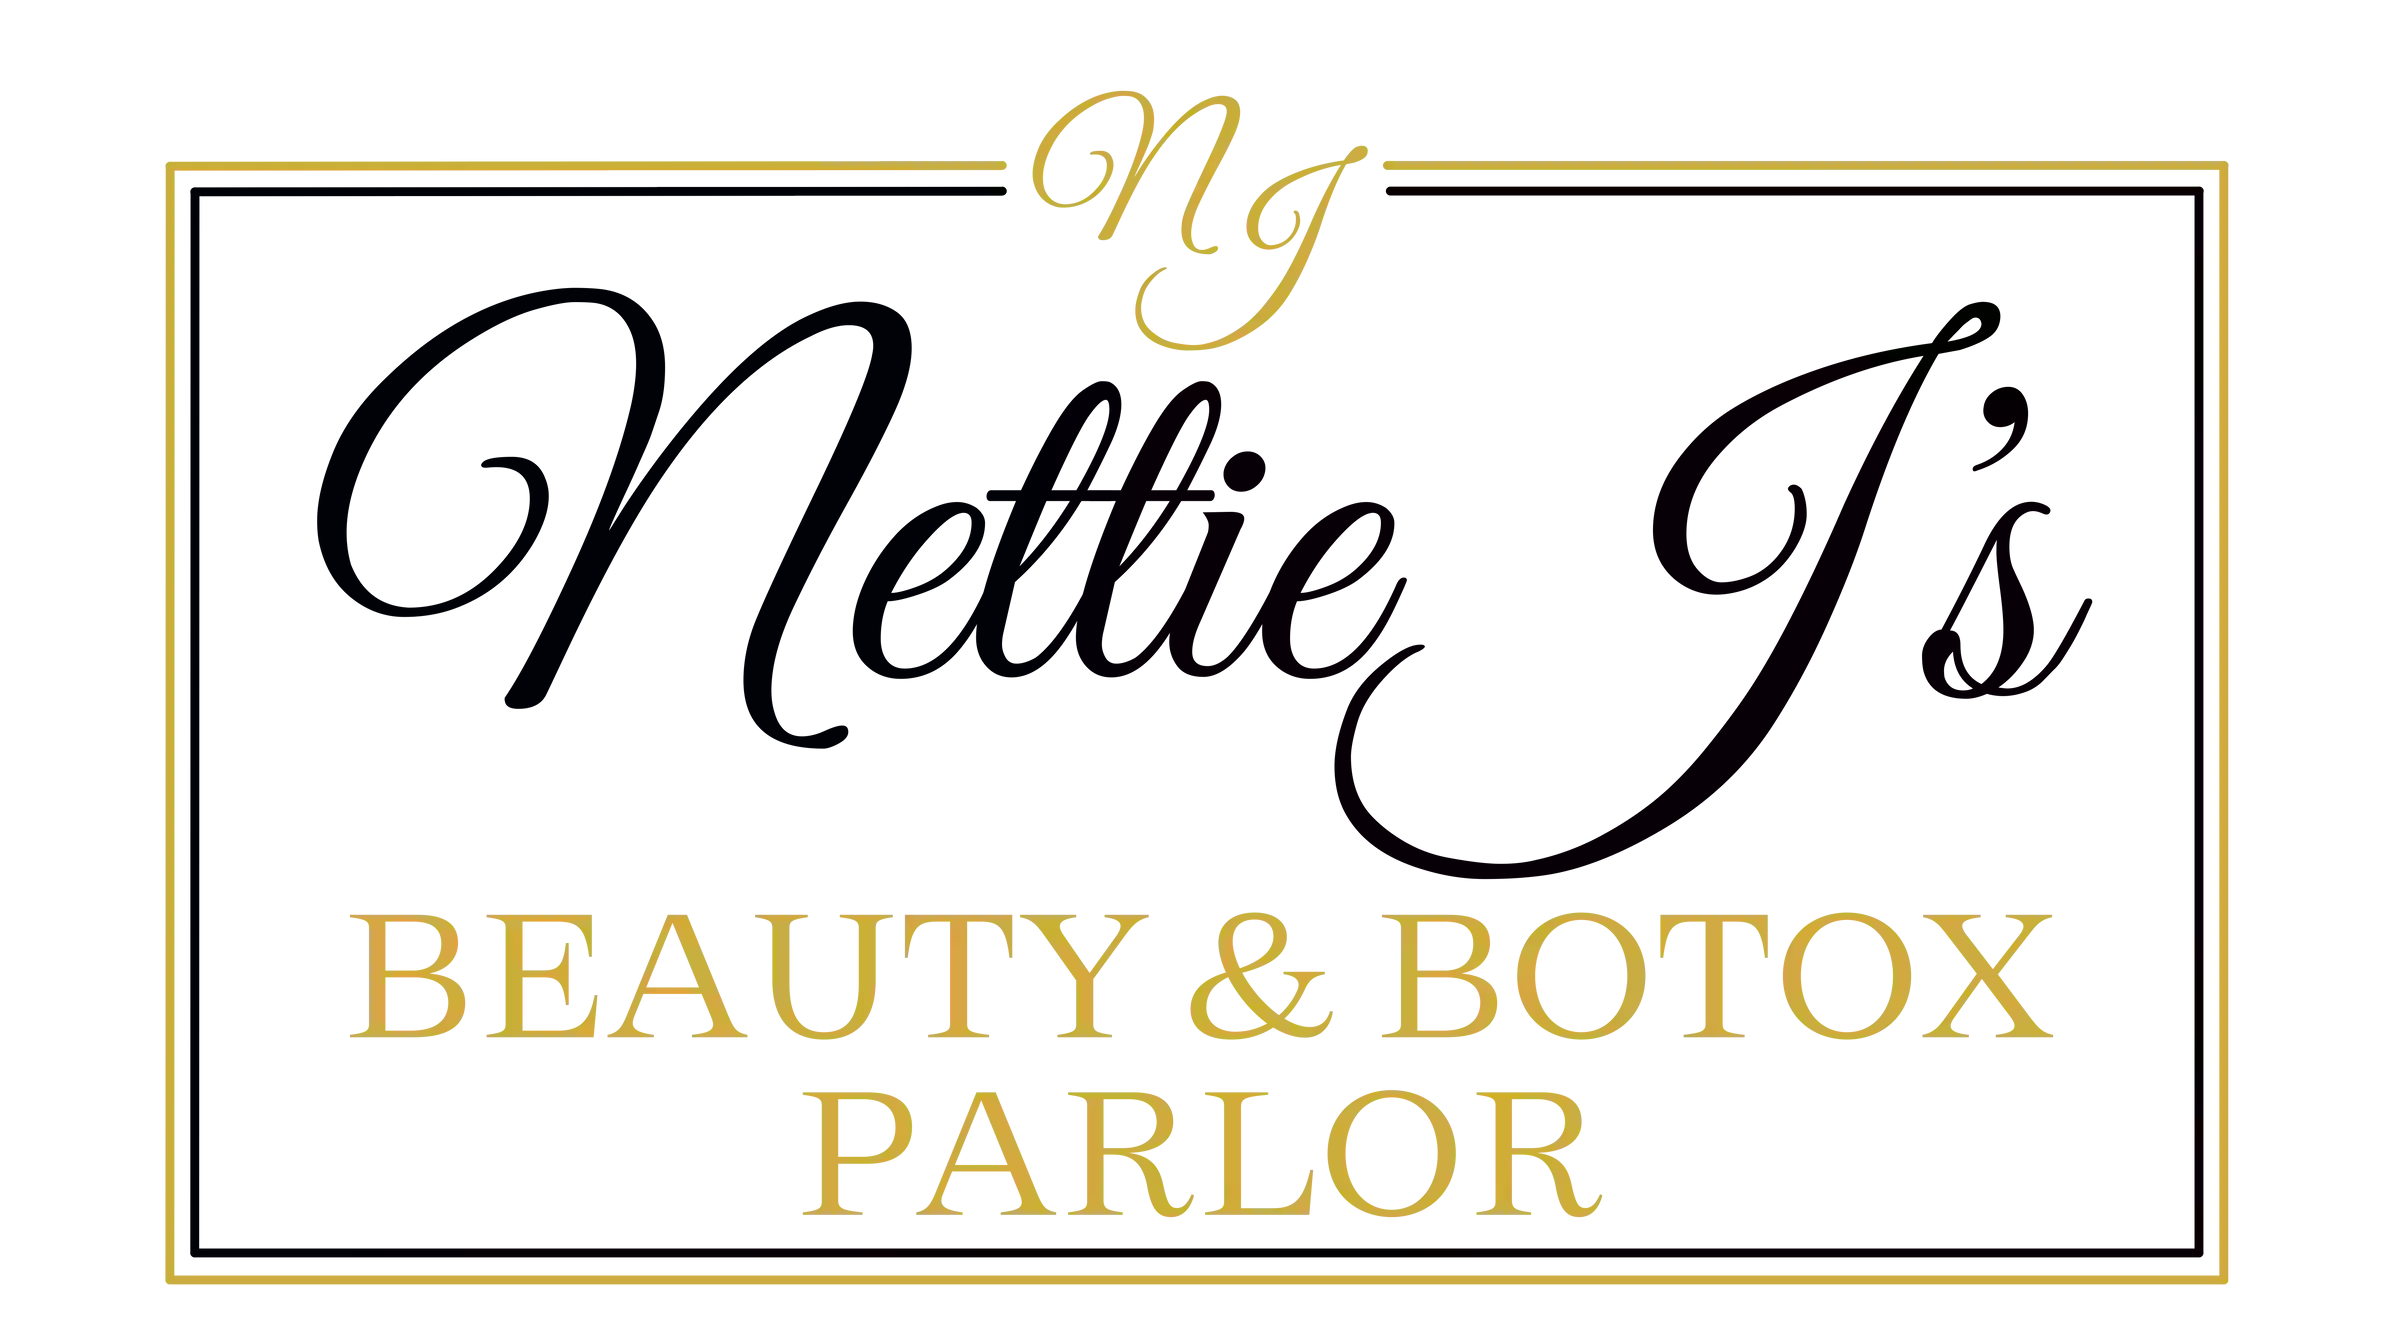 Nettie J's Beauty & Botox Parlor